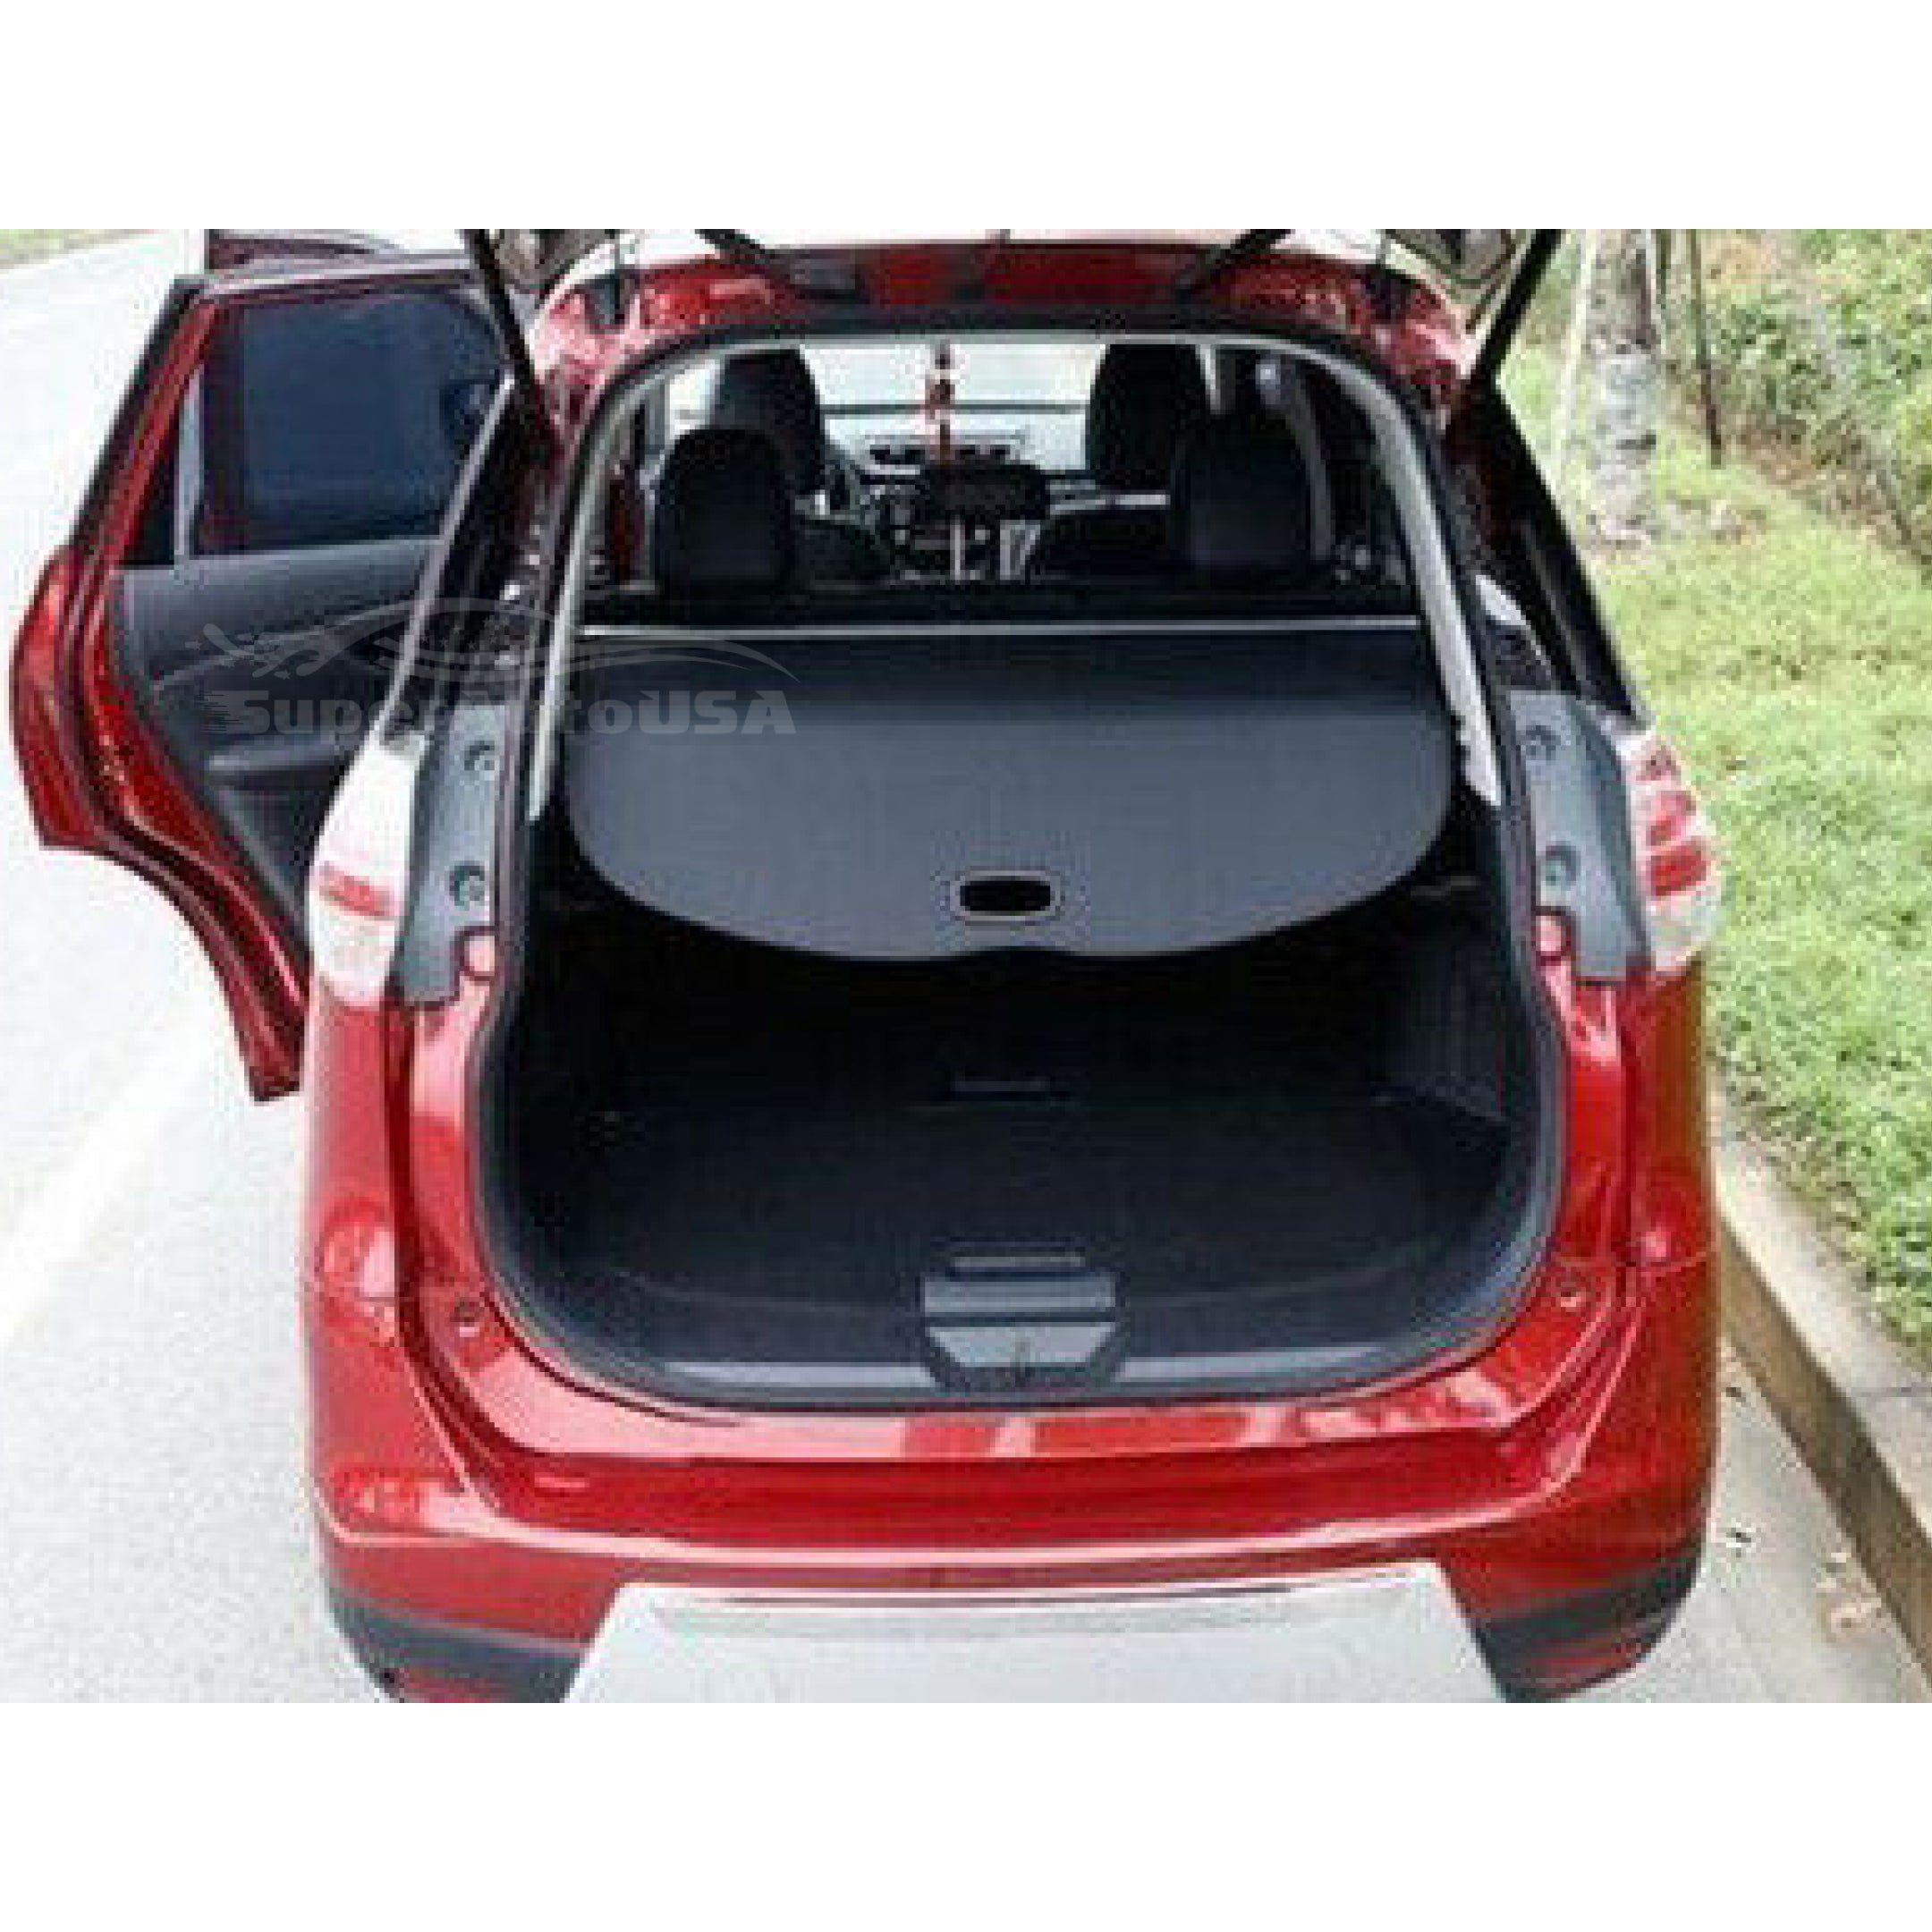 Se adapta a la cubierta de carga Tonneau retráctil del maletero trasero del equipaje Subaru XV 2014-2018 (negro)